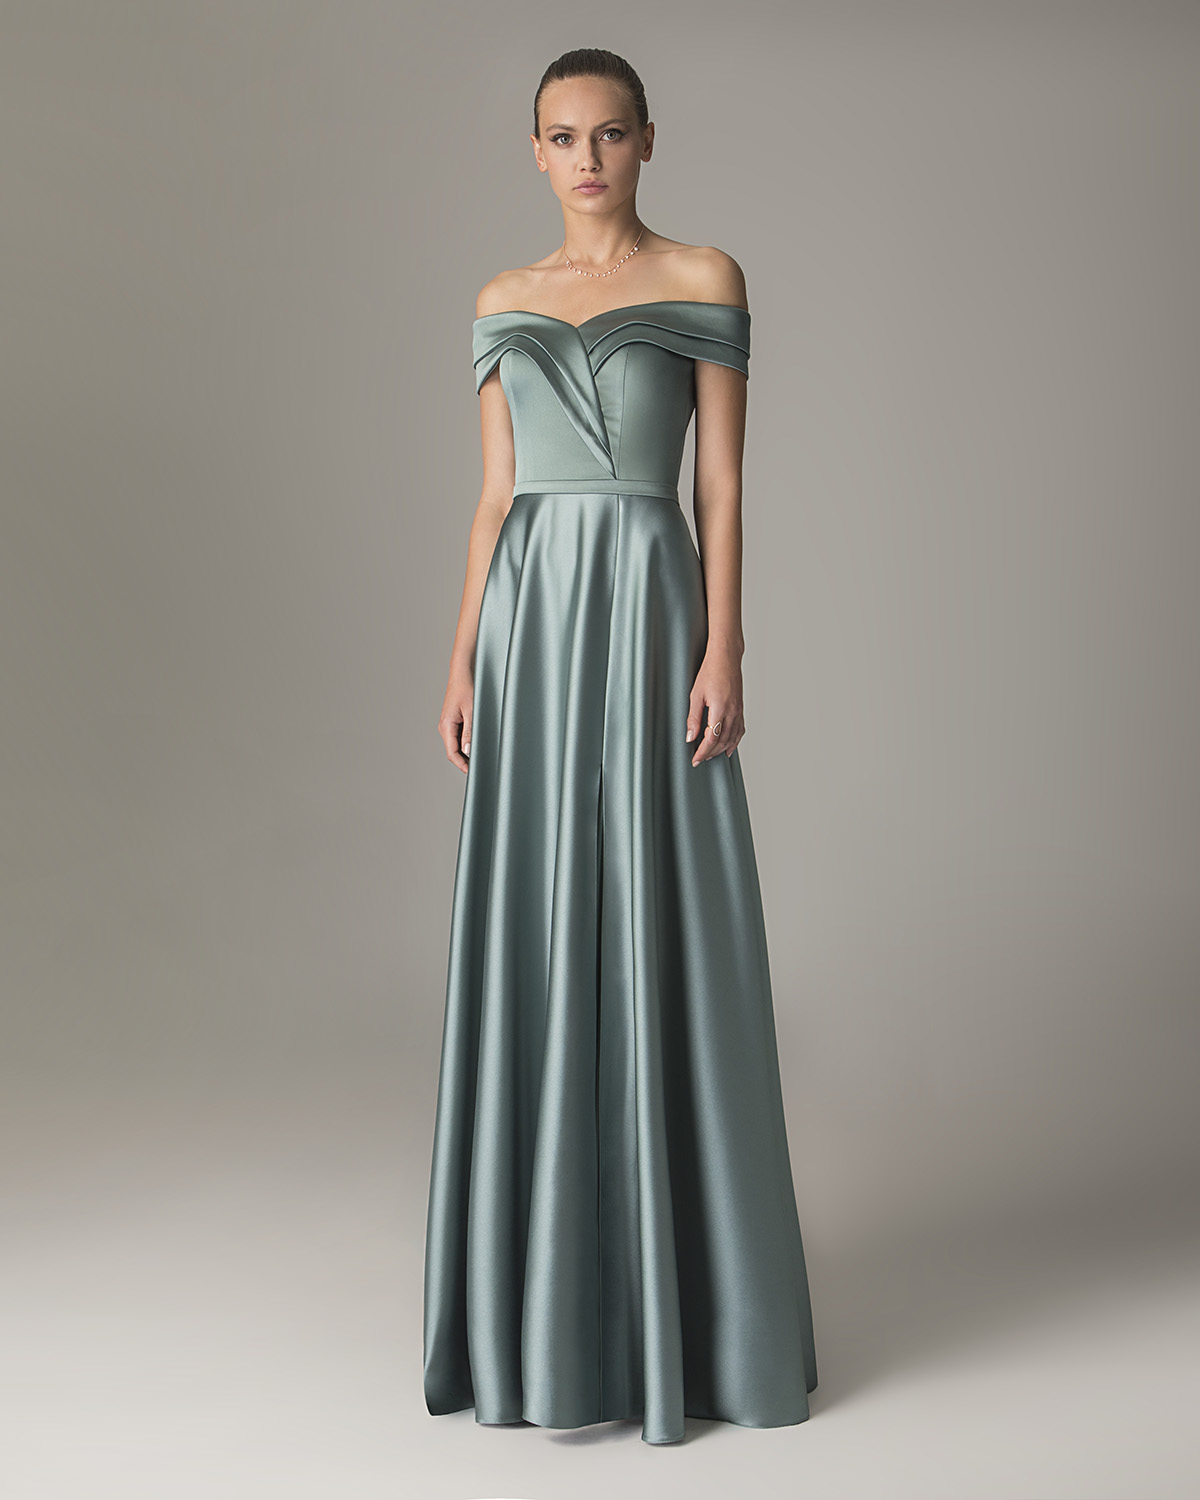 ILENE - Long satin cocktail dress